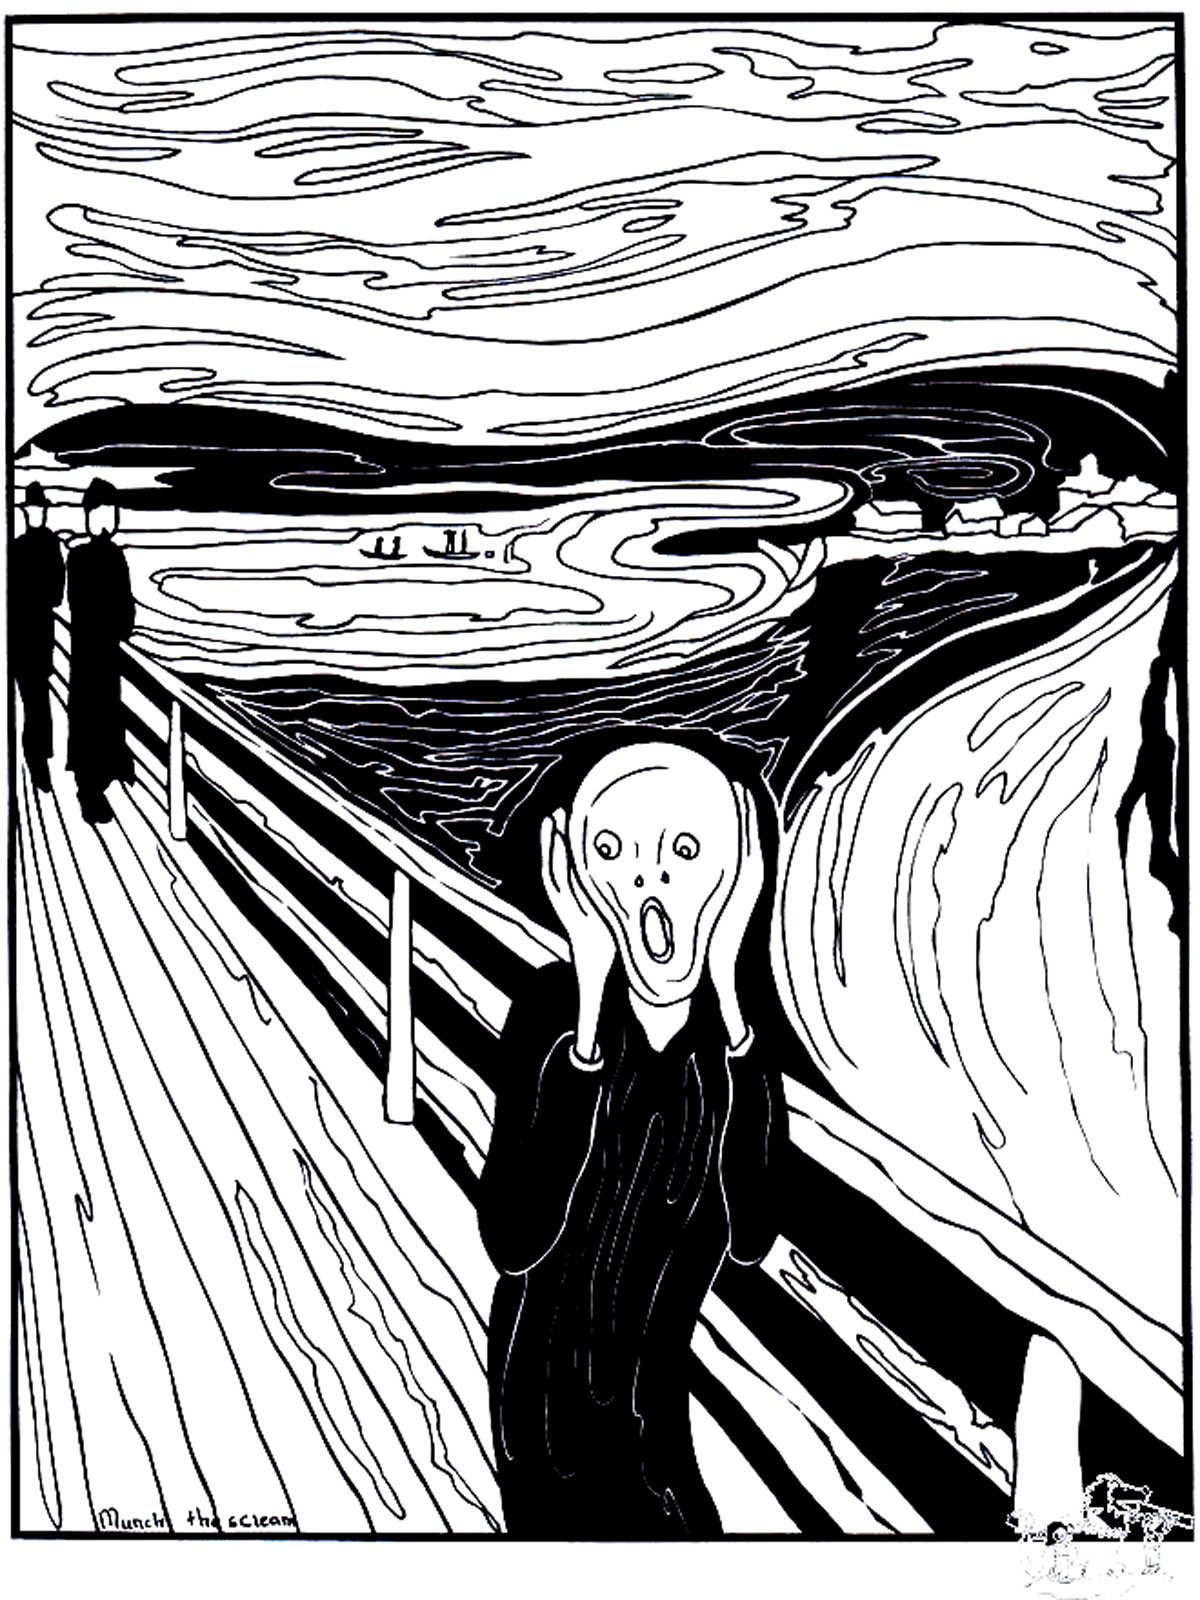 Coloreado basado en el cuadro 'El grito' (1893) de Edvard Munch'. El grito' es un cuadro emblemático que representa la sensación de opresión y angustia que a veces puede abrumarnos.
